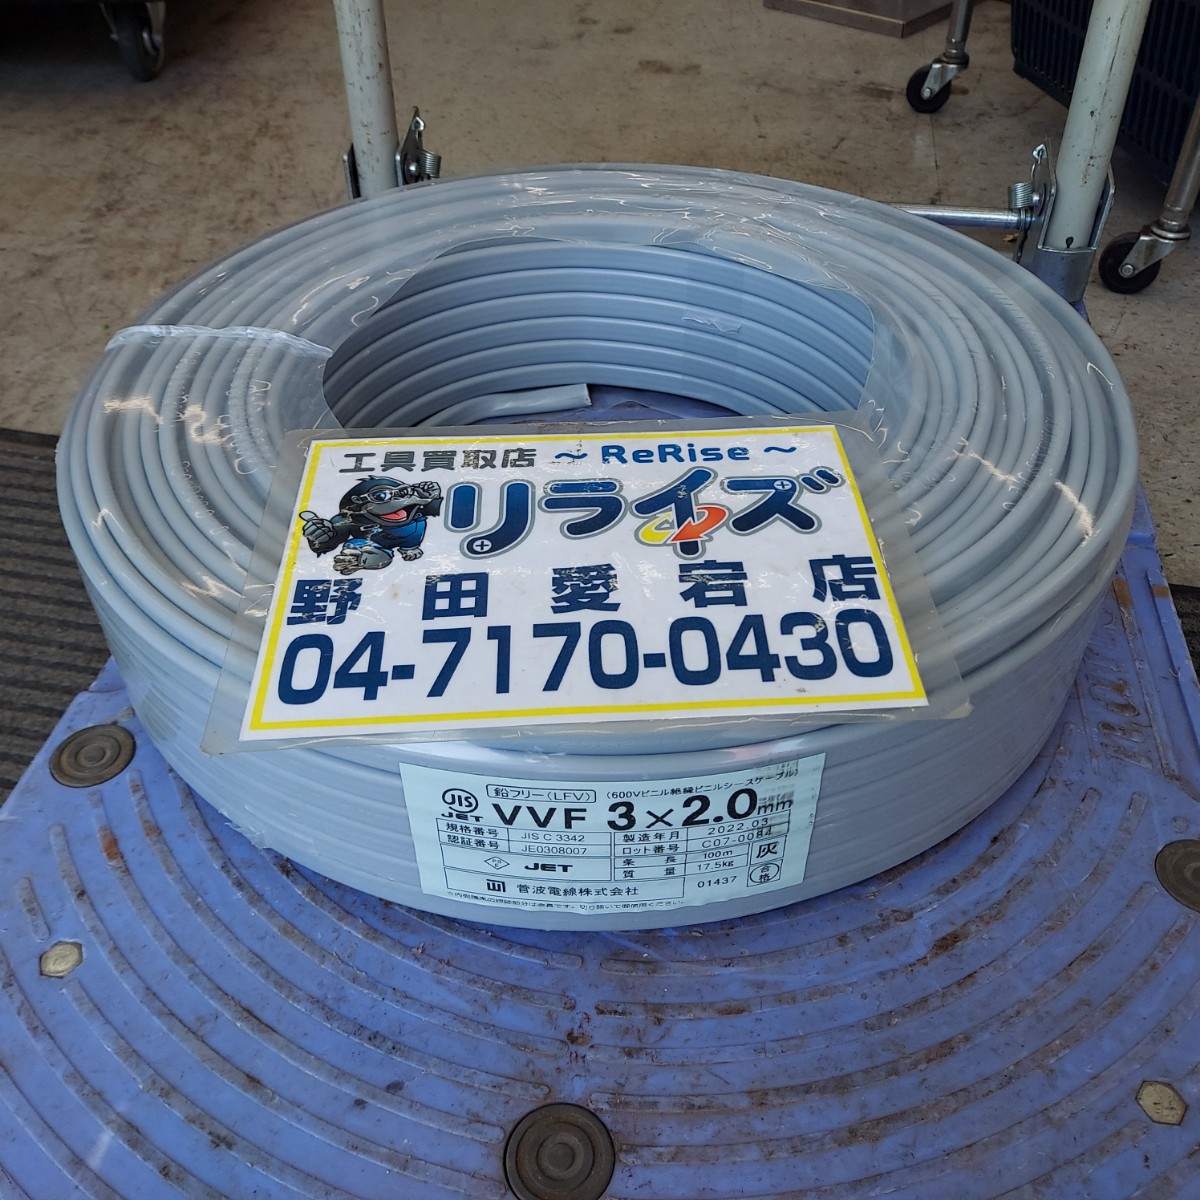 菅波電線 VVFケーブル 3×2.0